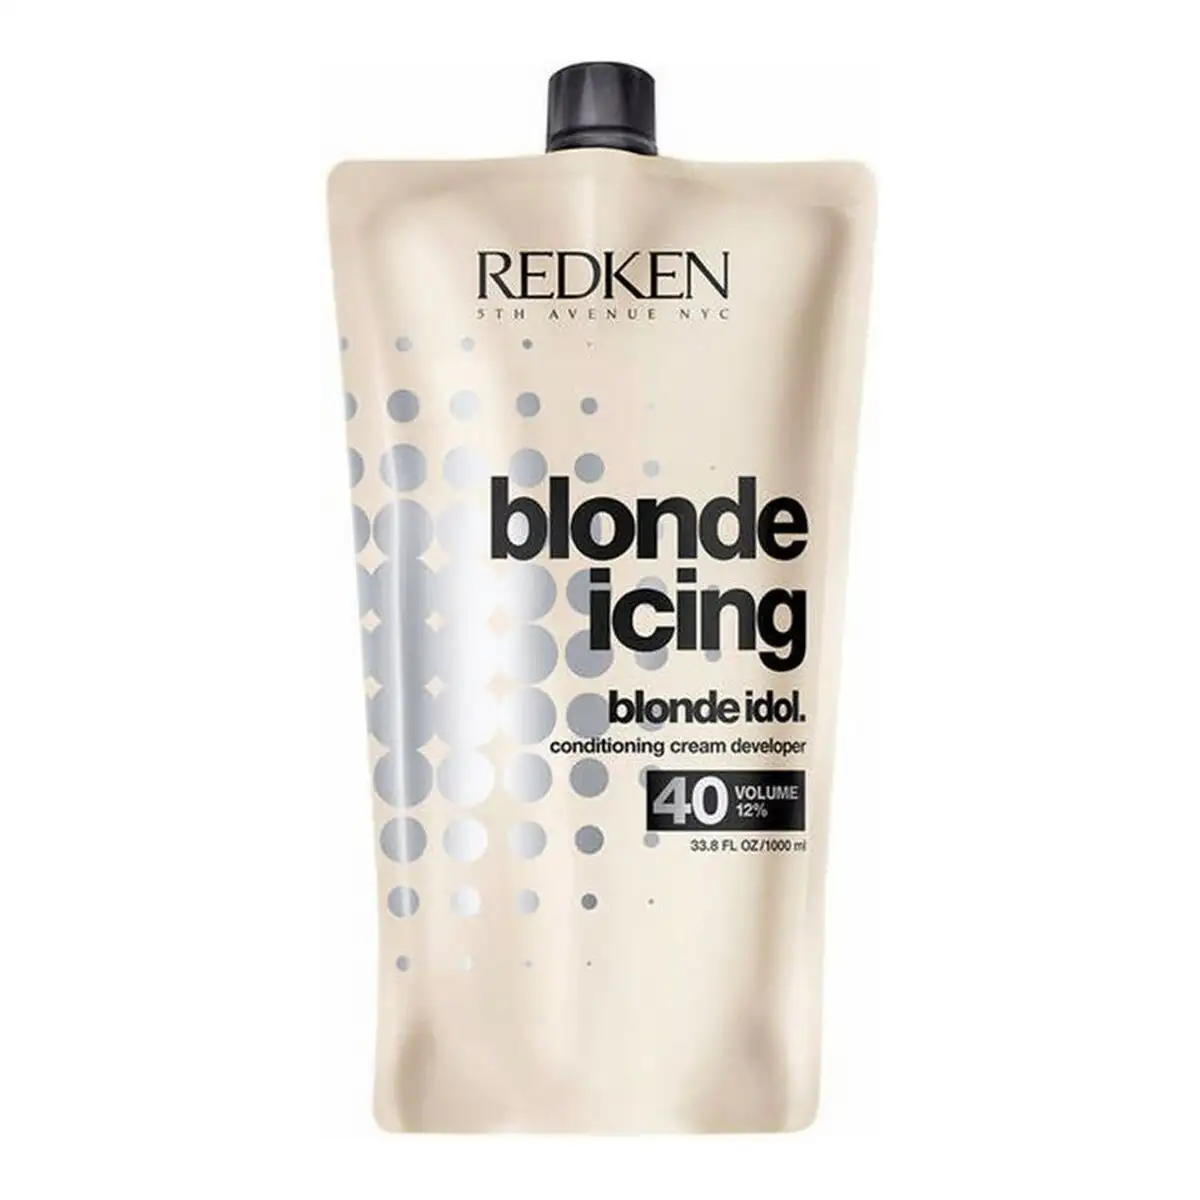 Apre s shampooing redken blonde idol 40 vol 12 1 l_7822. Entrez dans le Monde de DIAYTAR SENEGAL - Où la Satisfaction est la Priorité. Explorez notre sélection pensée pour vous offrir une expérience de shopping qui va au-delà de vos attentes.